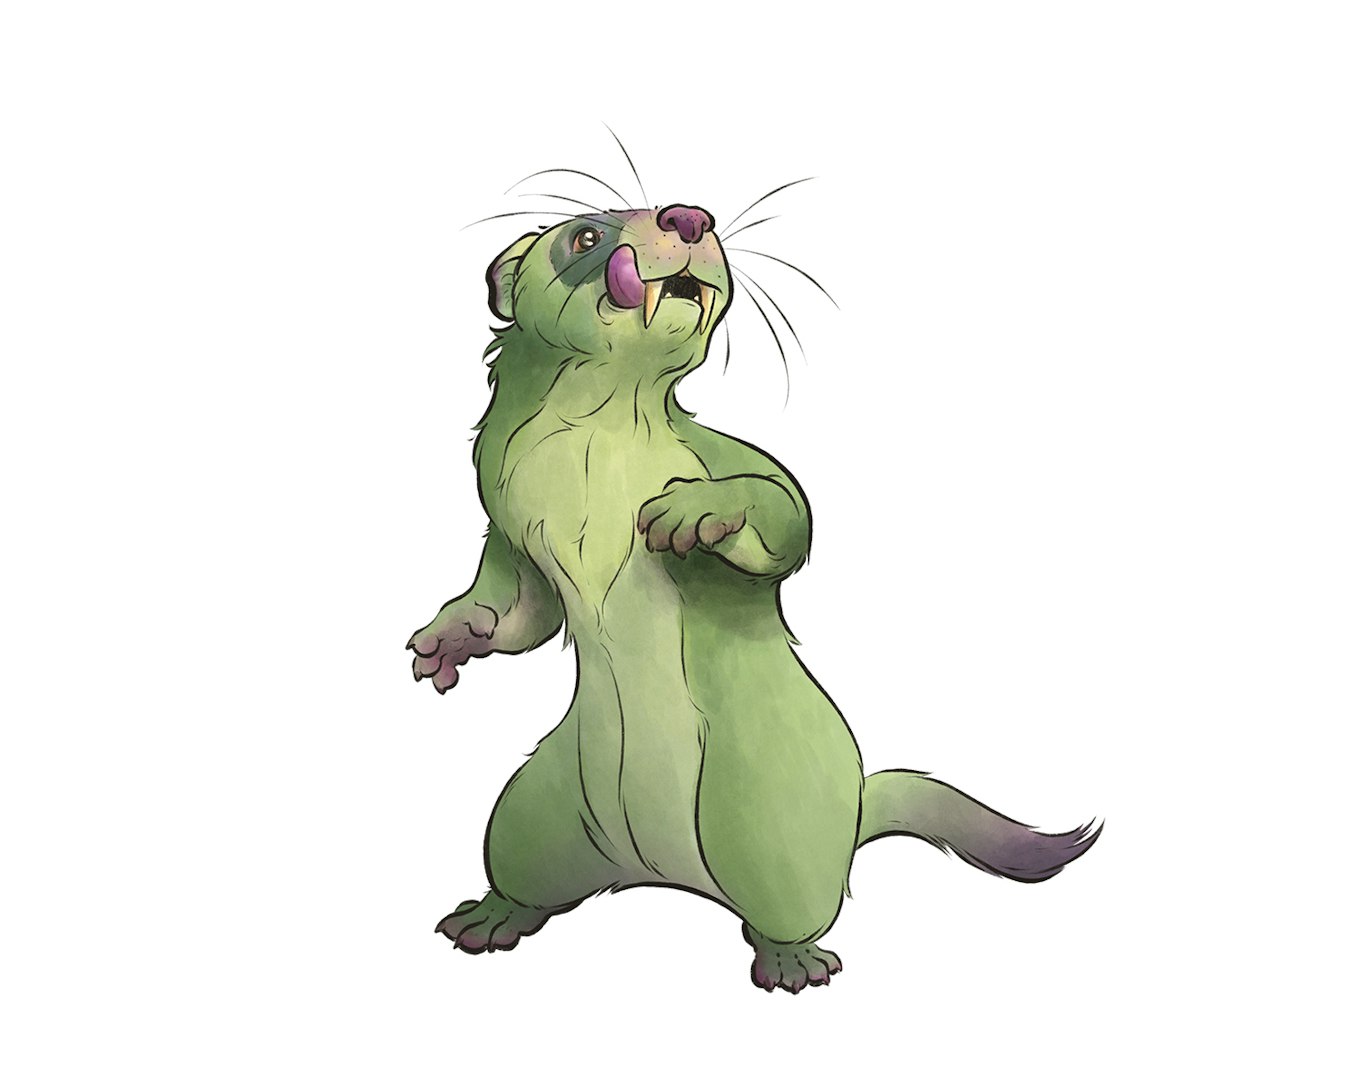  A green fanged ferret